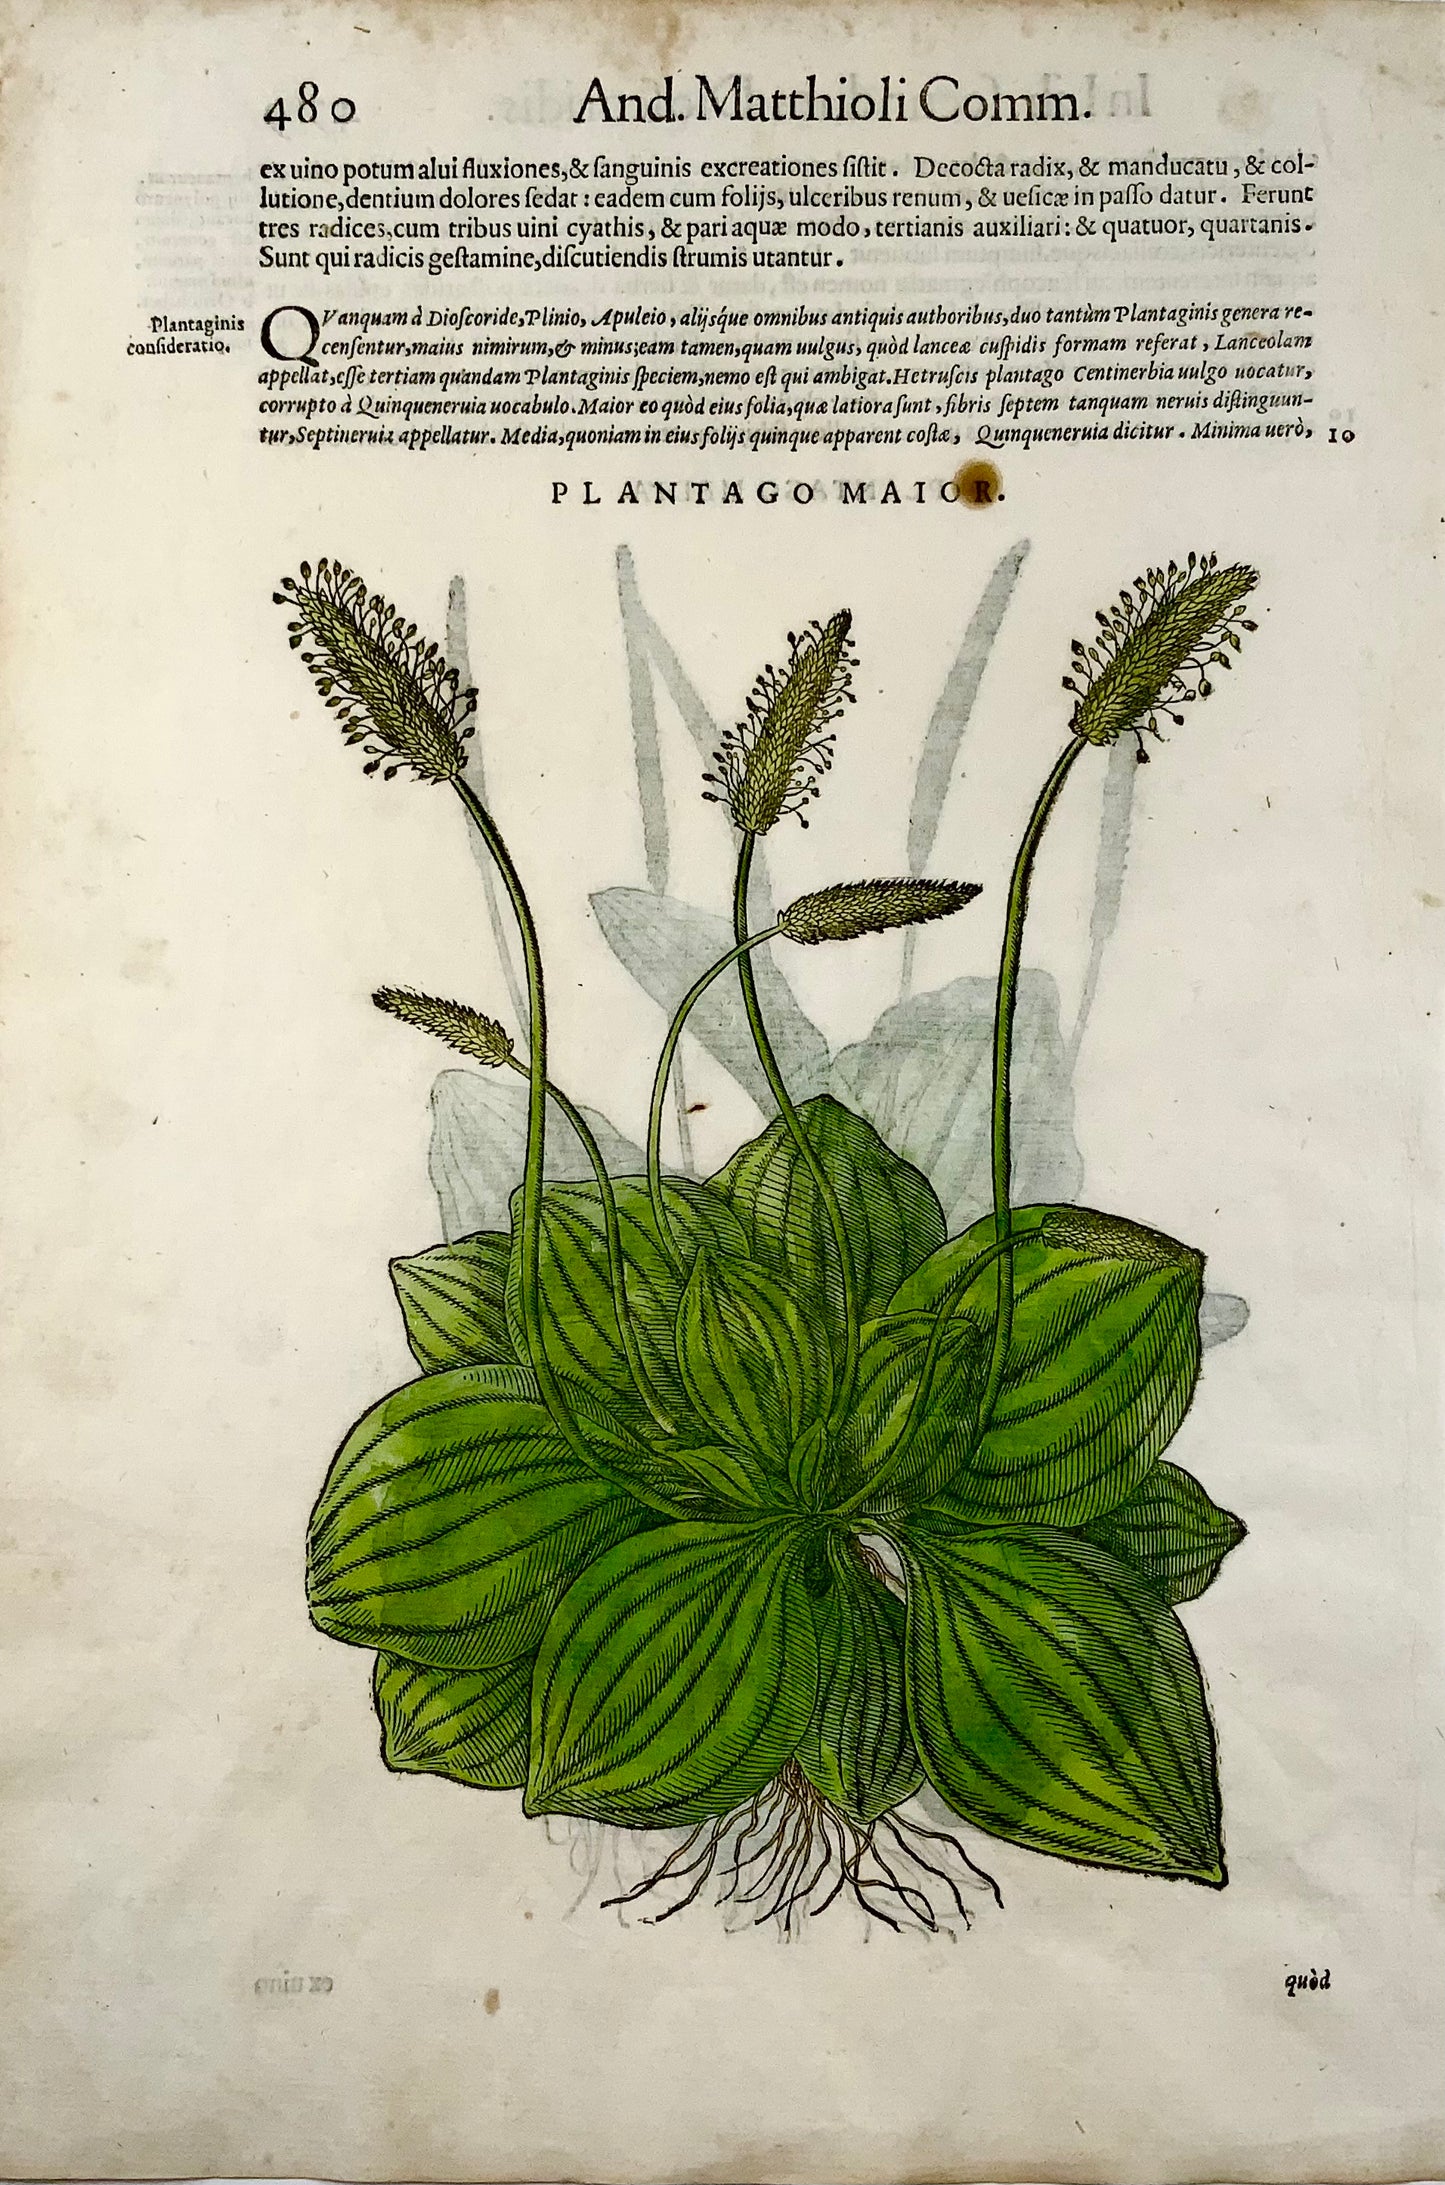 1562 Plantains [Plantago] - Matthioli Botanical - Folio 2 gravures sur bois - Couleur à la main